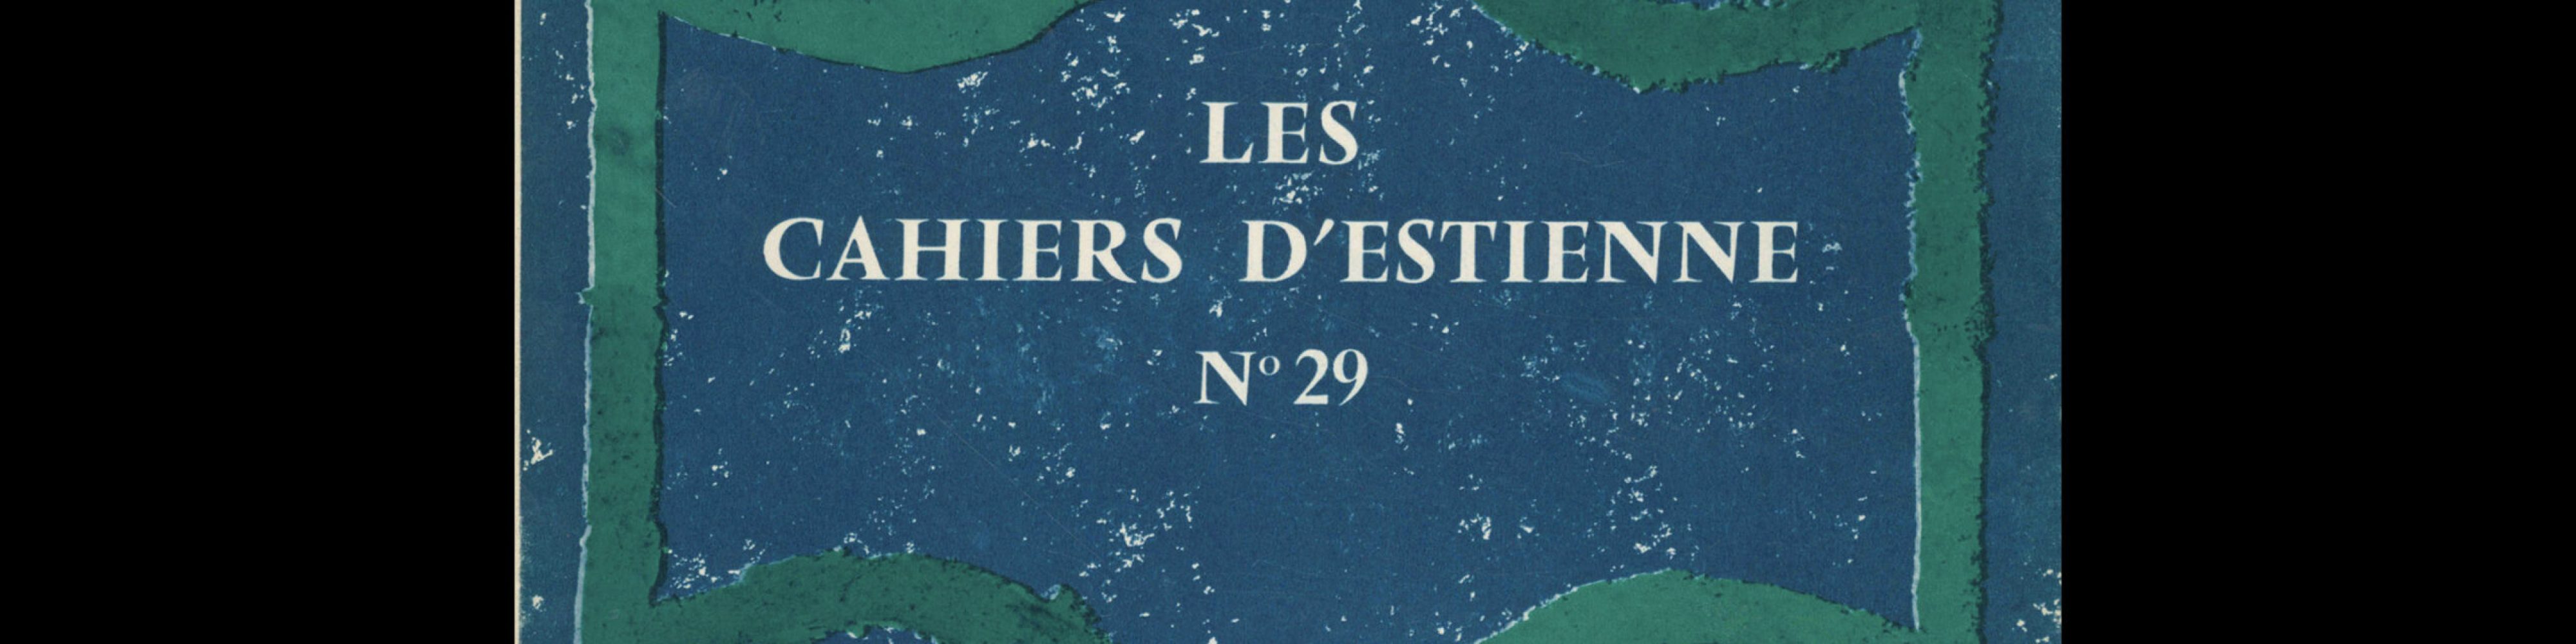 Les Cahiers d'Estienne, 29, 1963